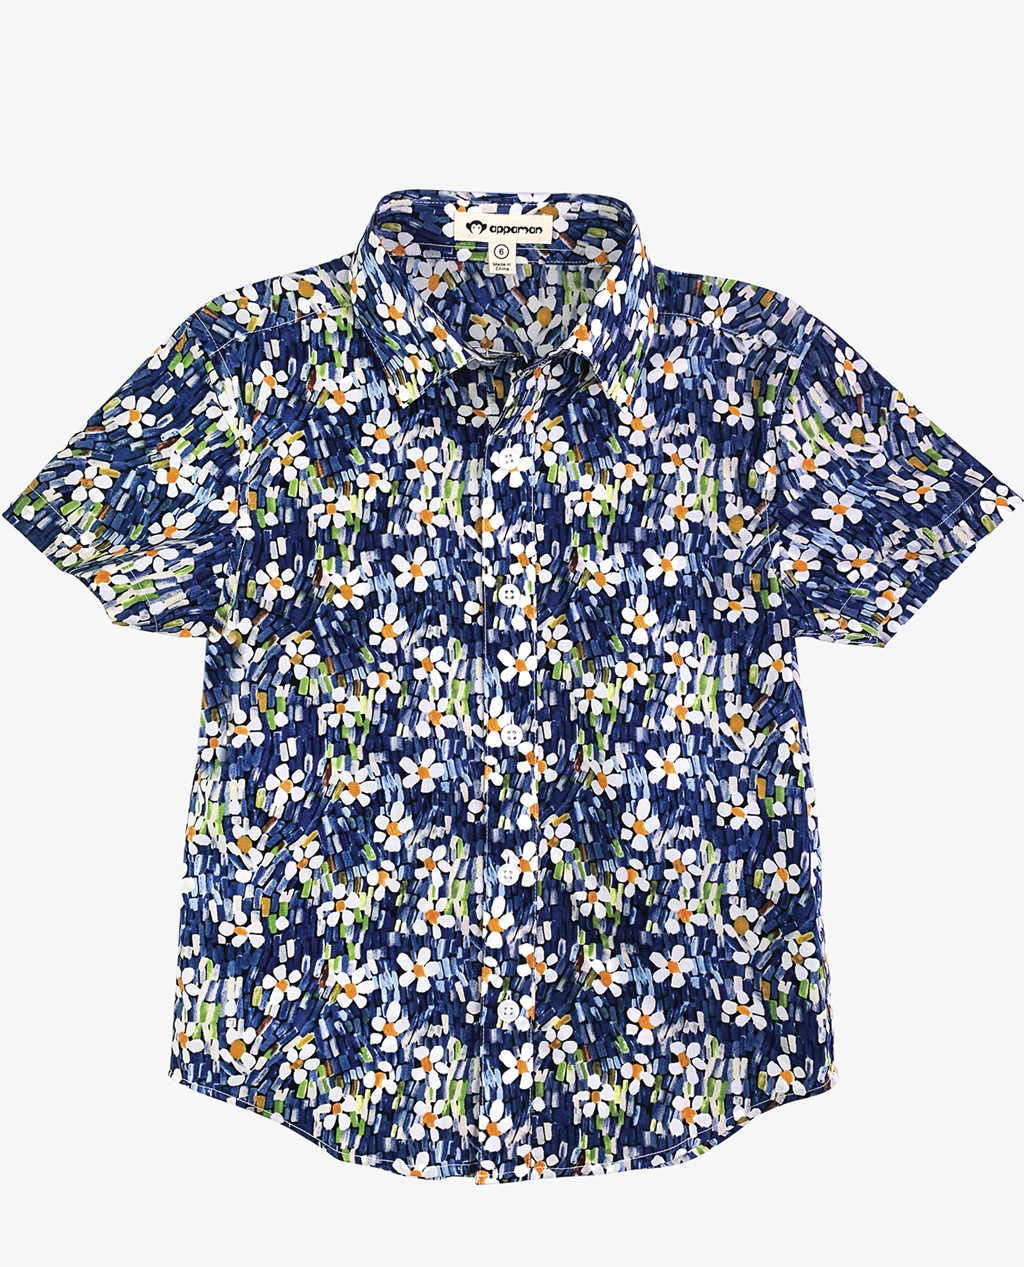 a dark blue floral print button up shirt